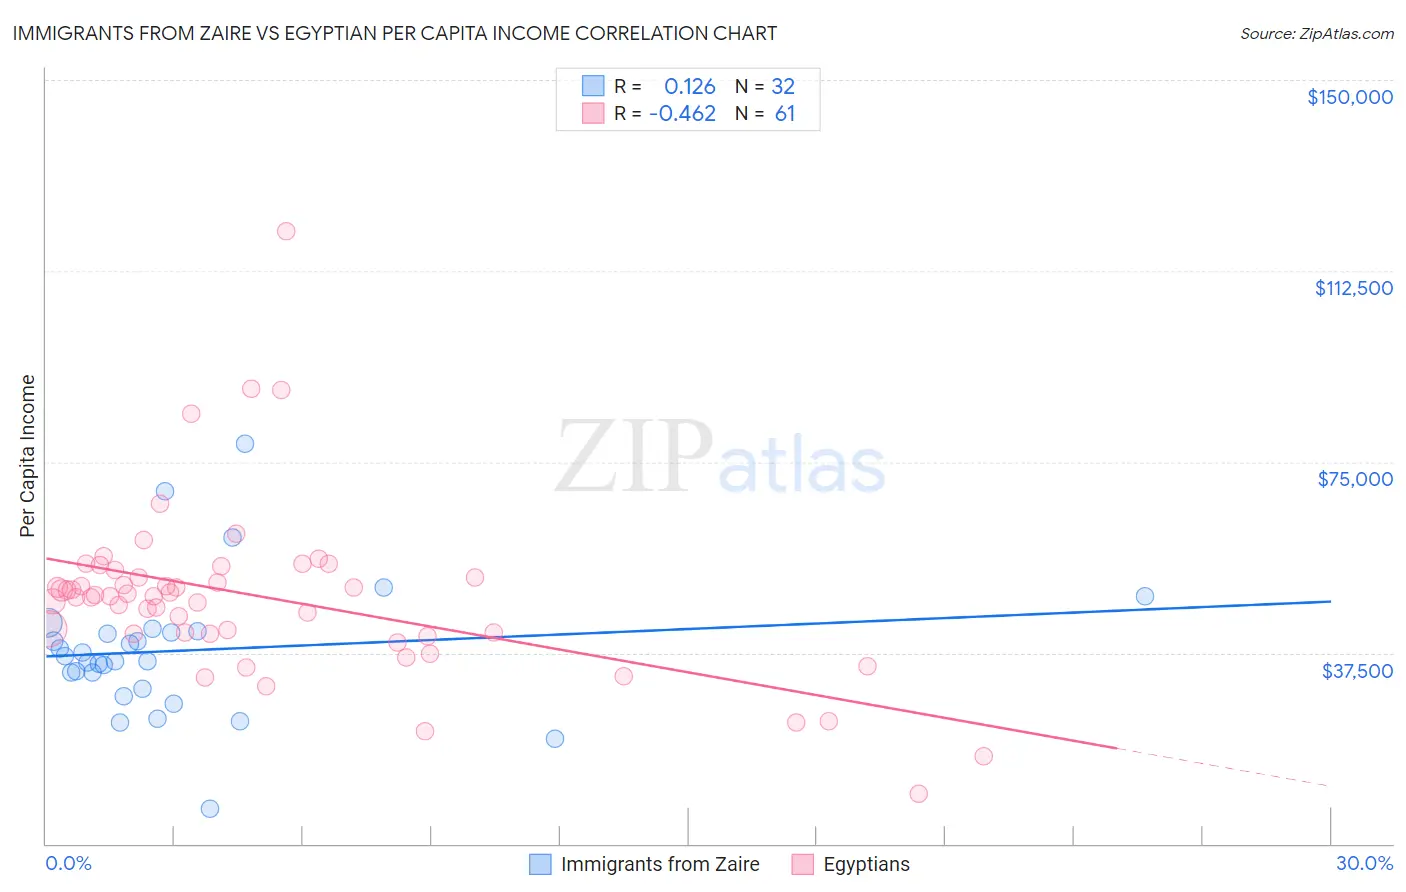 Immigrants from Zaire vs Egyptian Per Capita Income